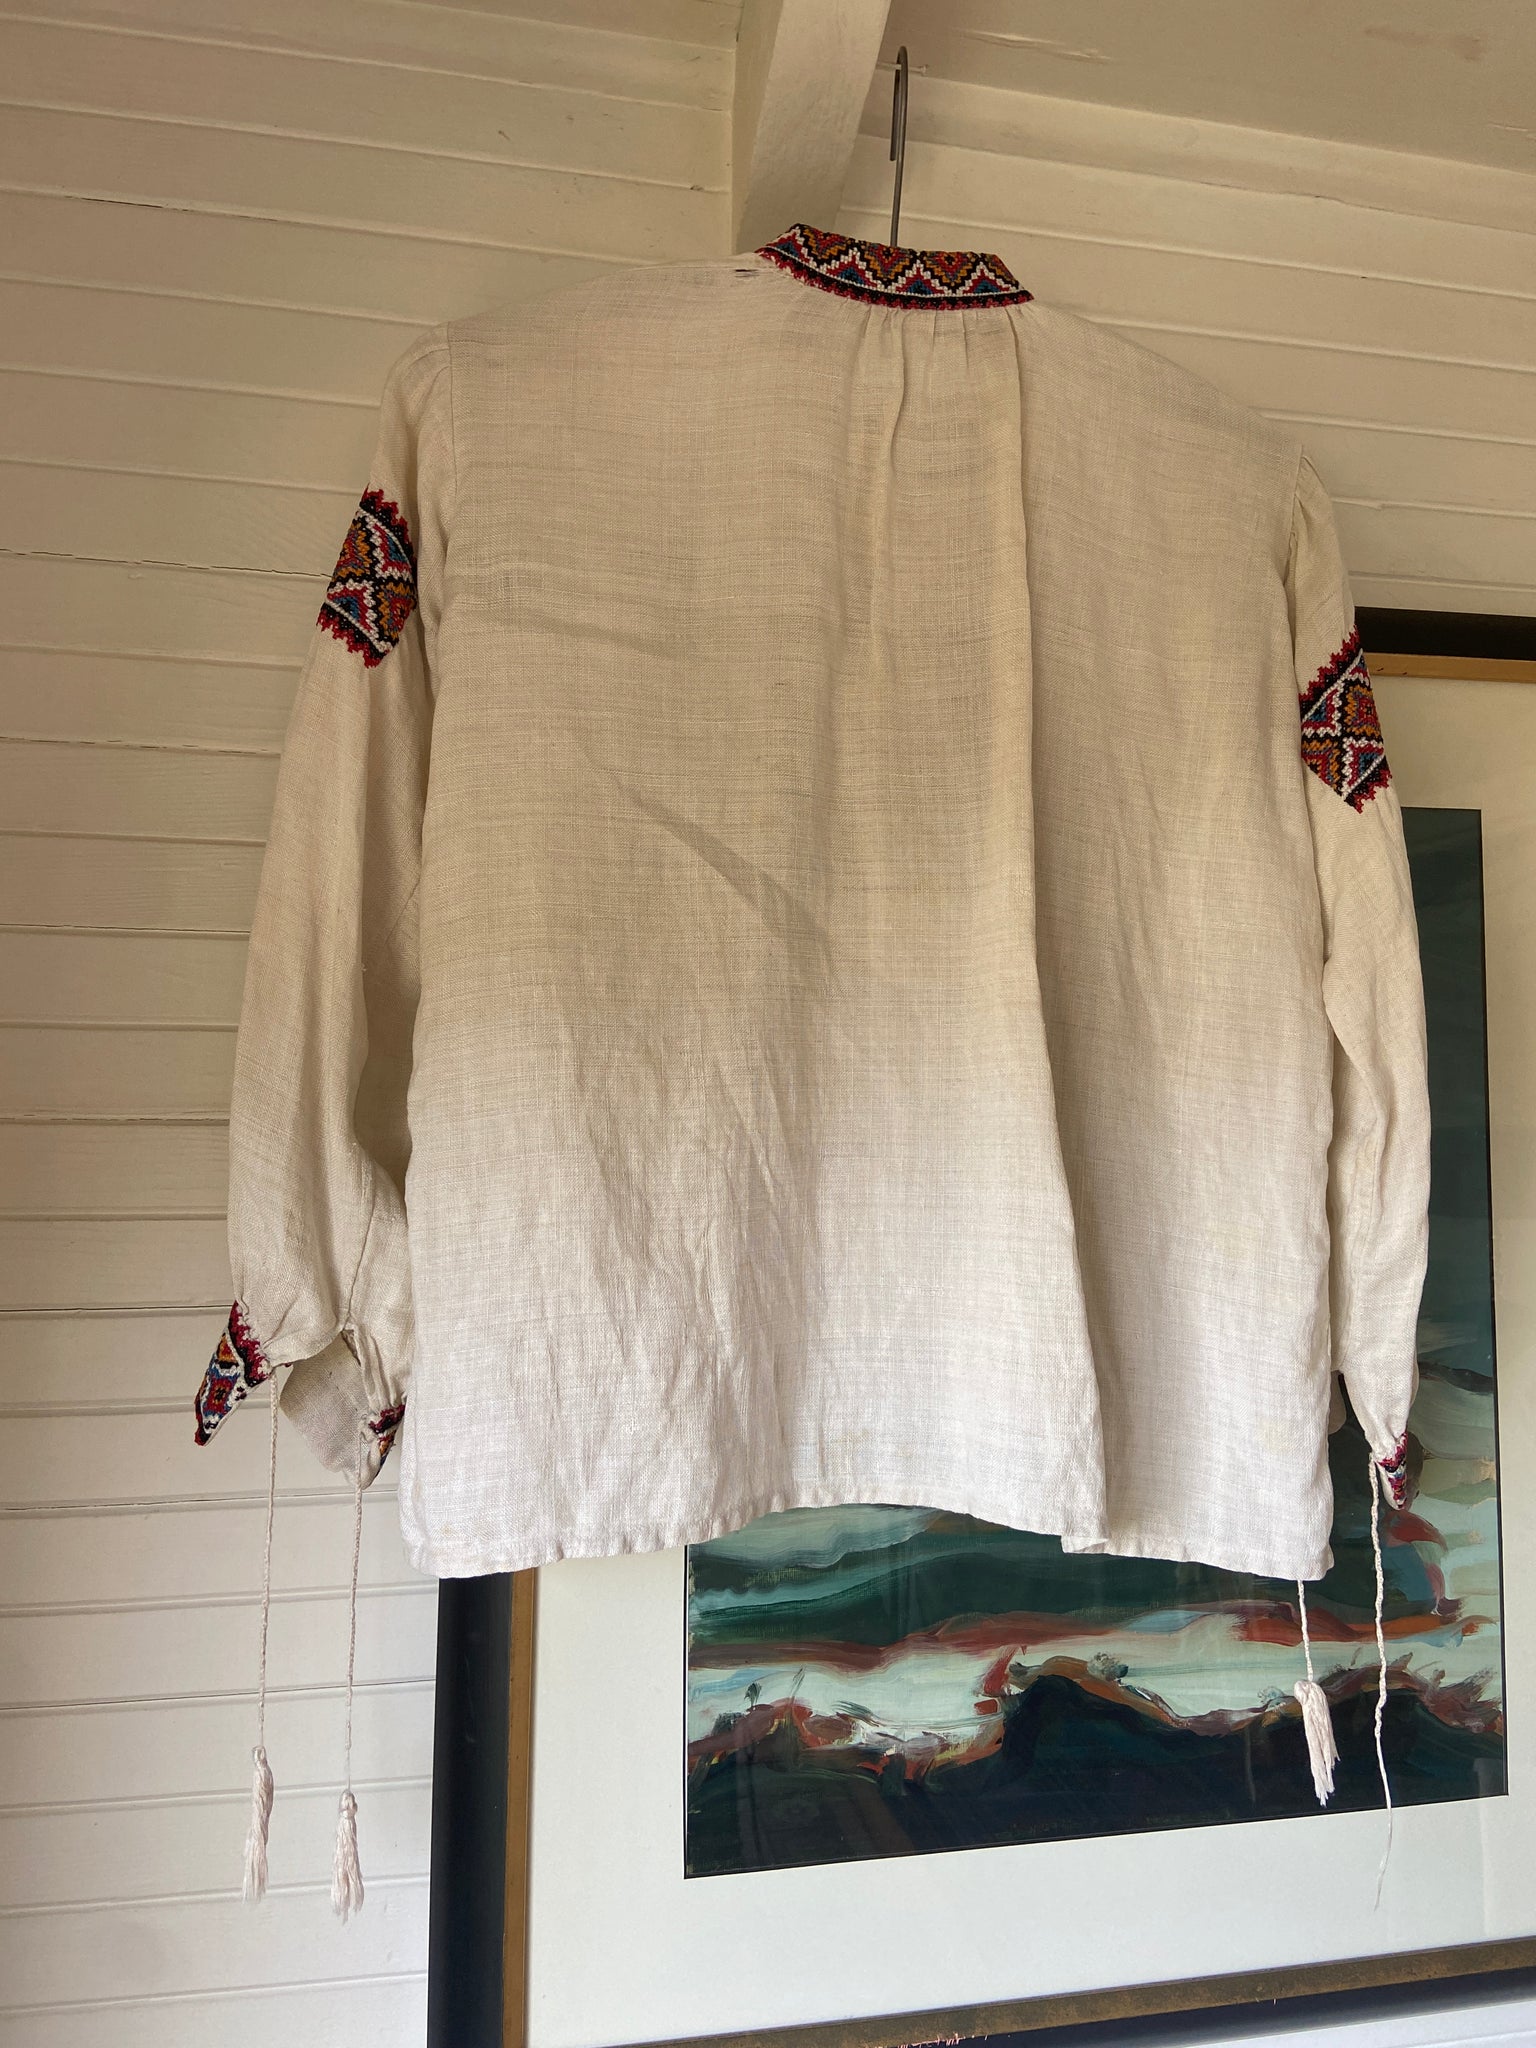 1930s Cross Stitch Linen Peasant Blouse